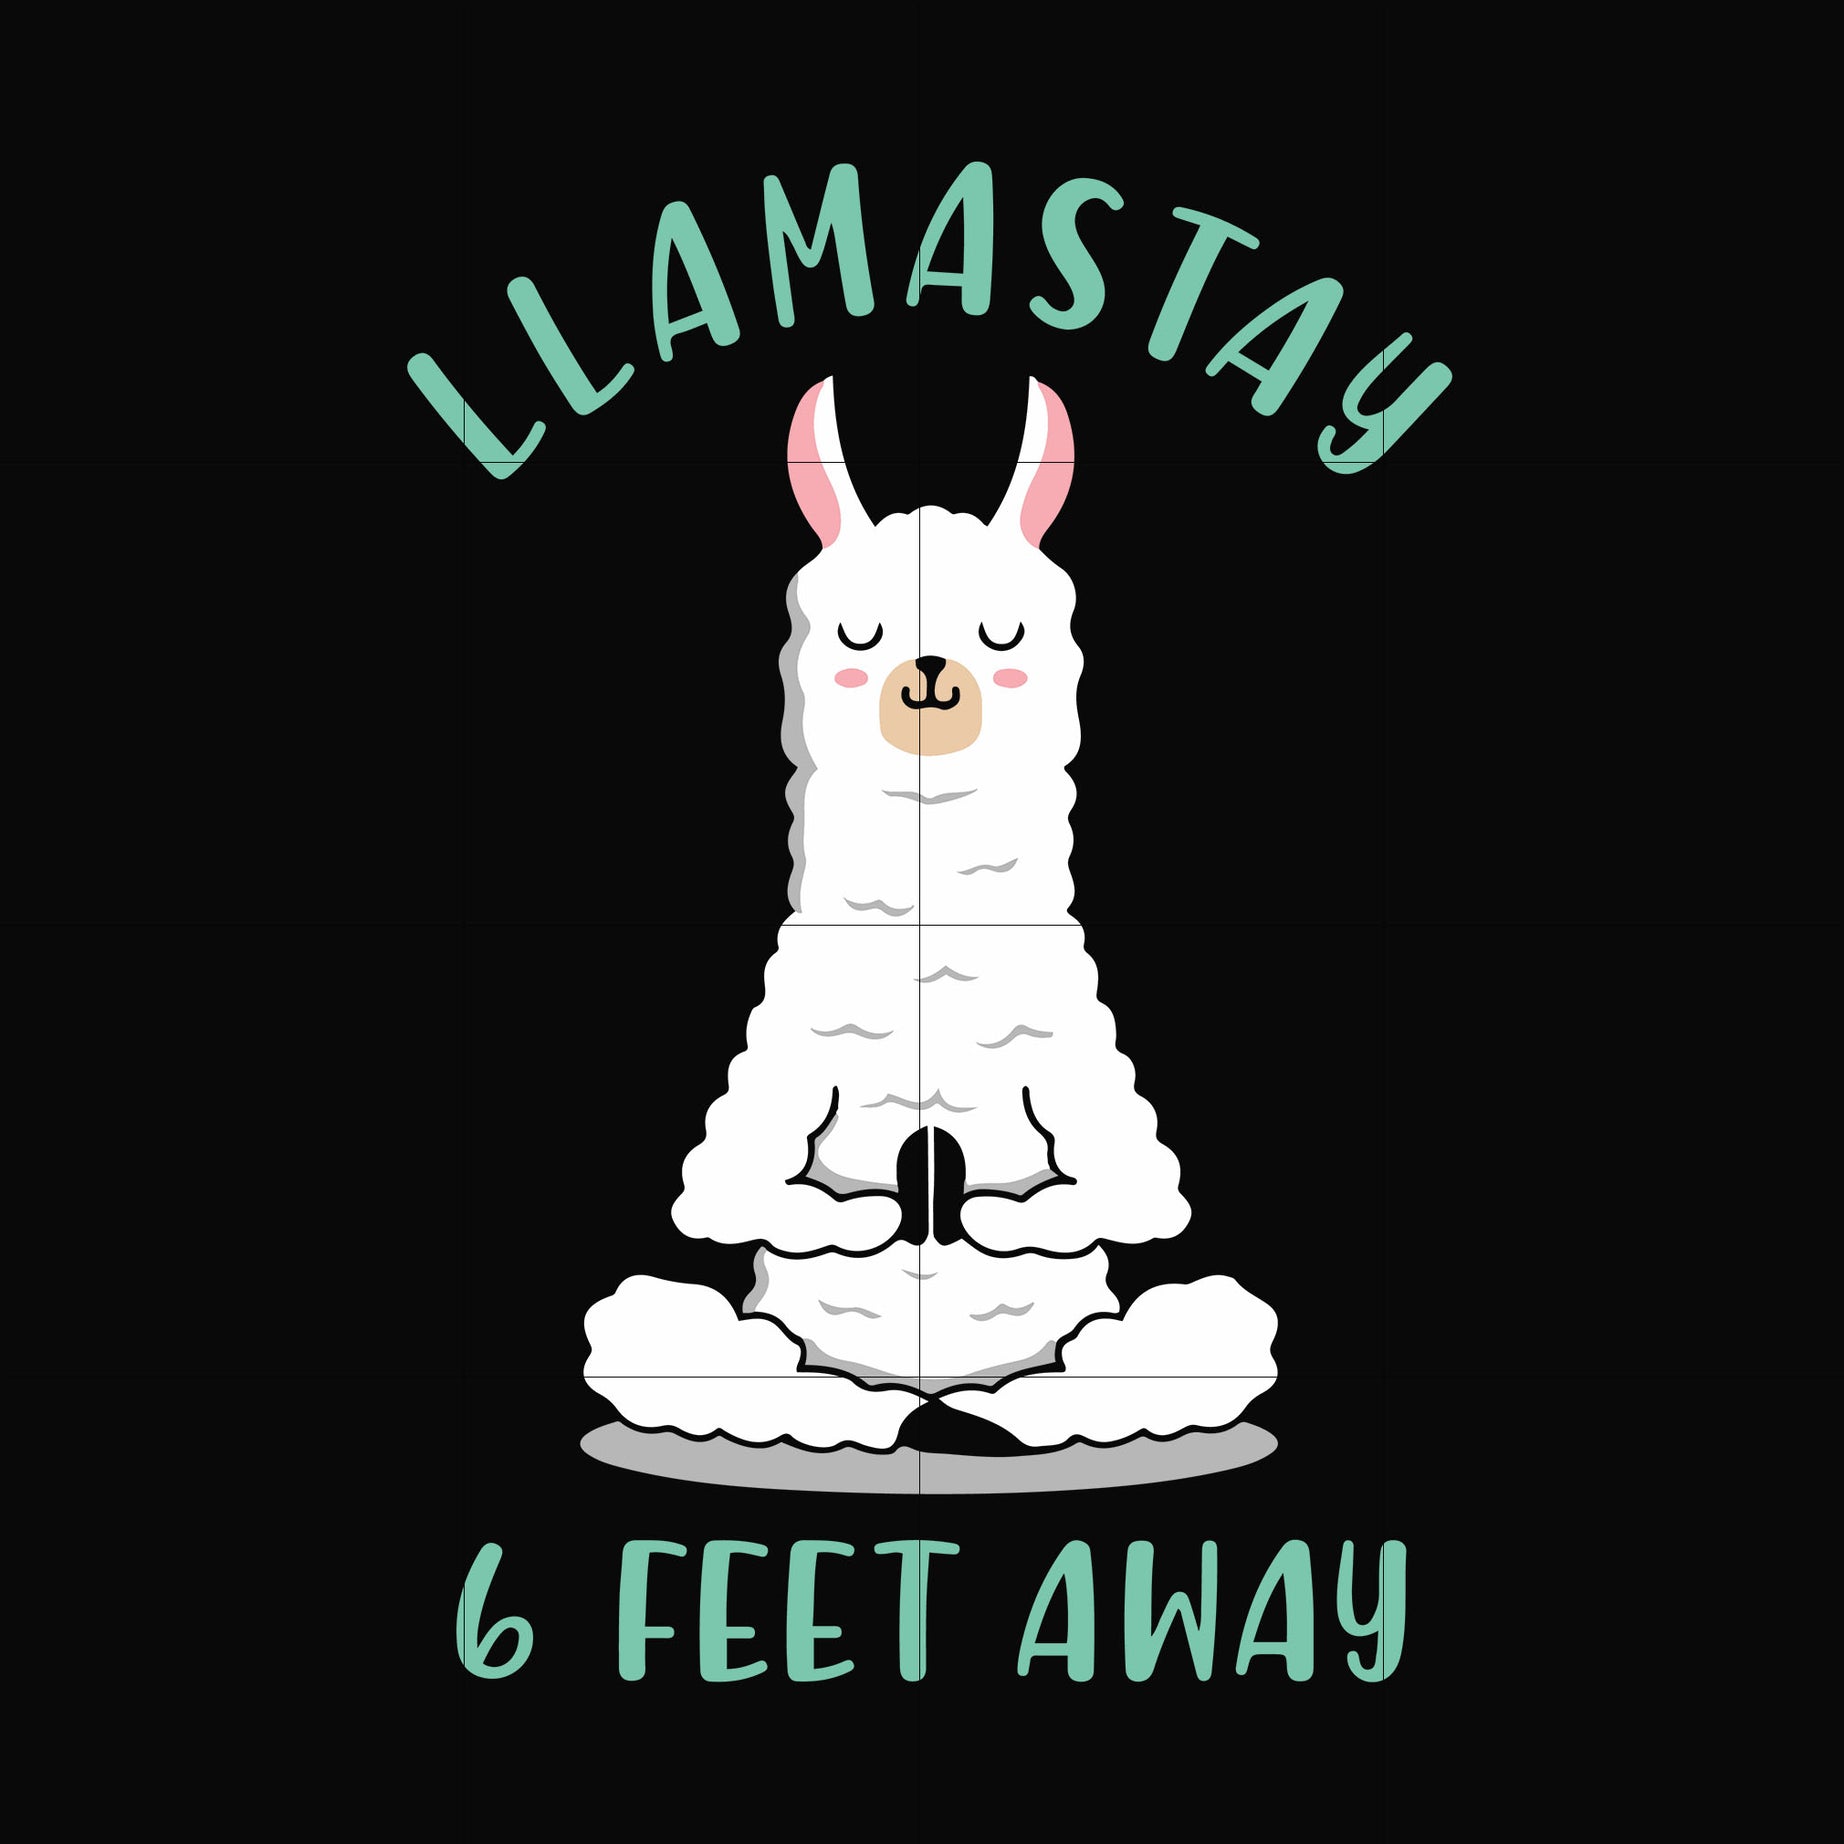 Llamastay 6 feet away svg, png, dxf, eps digital file TD27072042